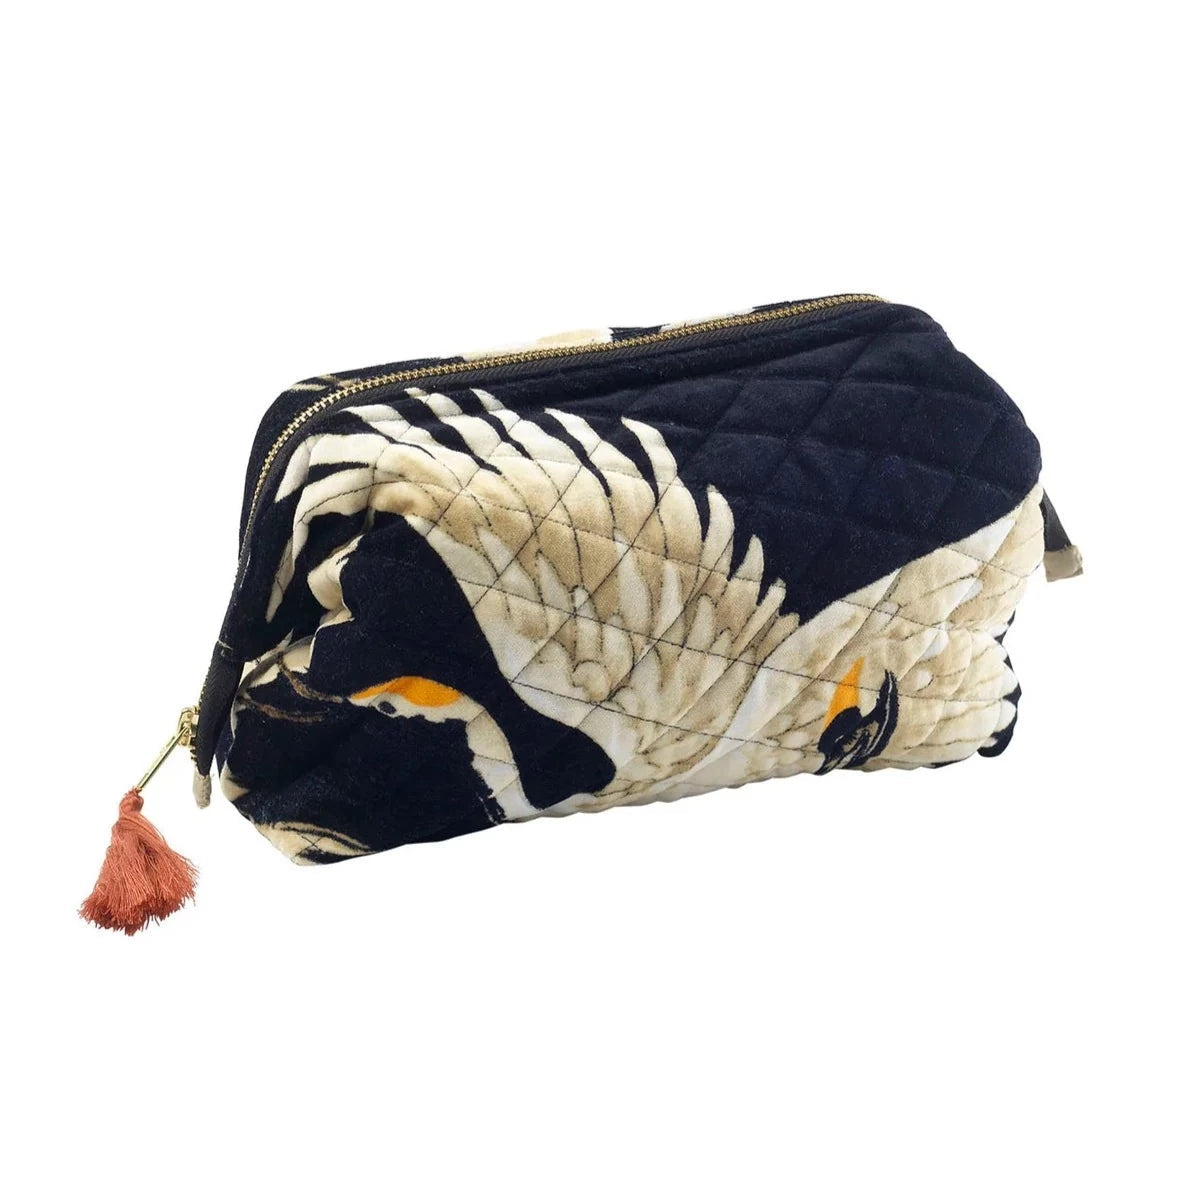 Black Velvet Stork Pouch - The Nancy Smillie Shop - Art, Jewellery & Designer Gifts Glasgow